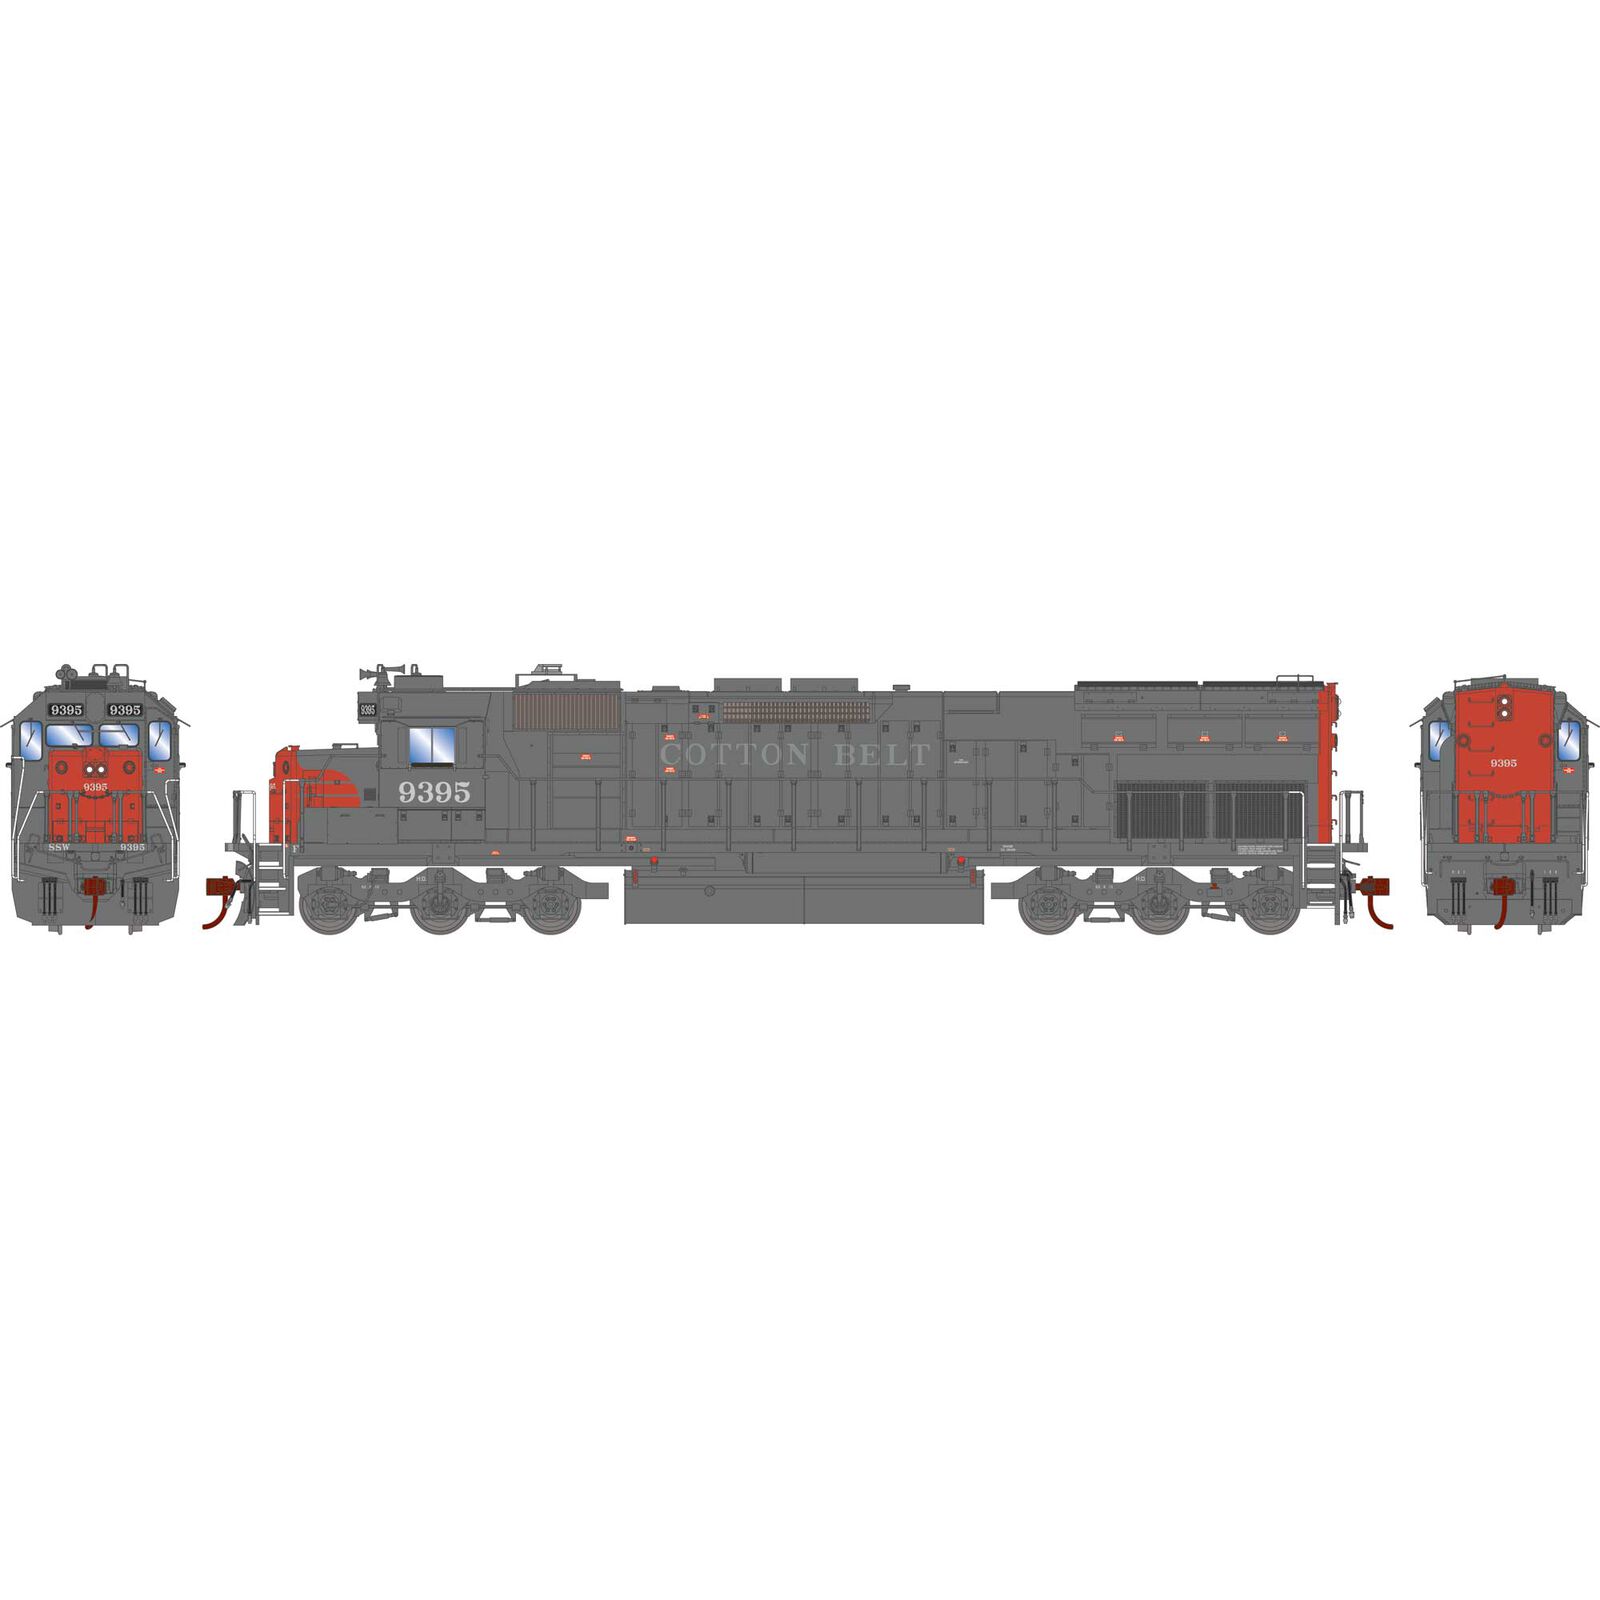 HO SD45T-2 Locomotive with DCC & Sound, Cotton Belt #9395